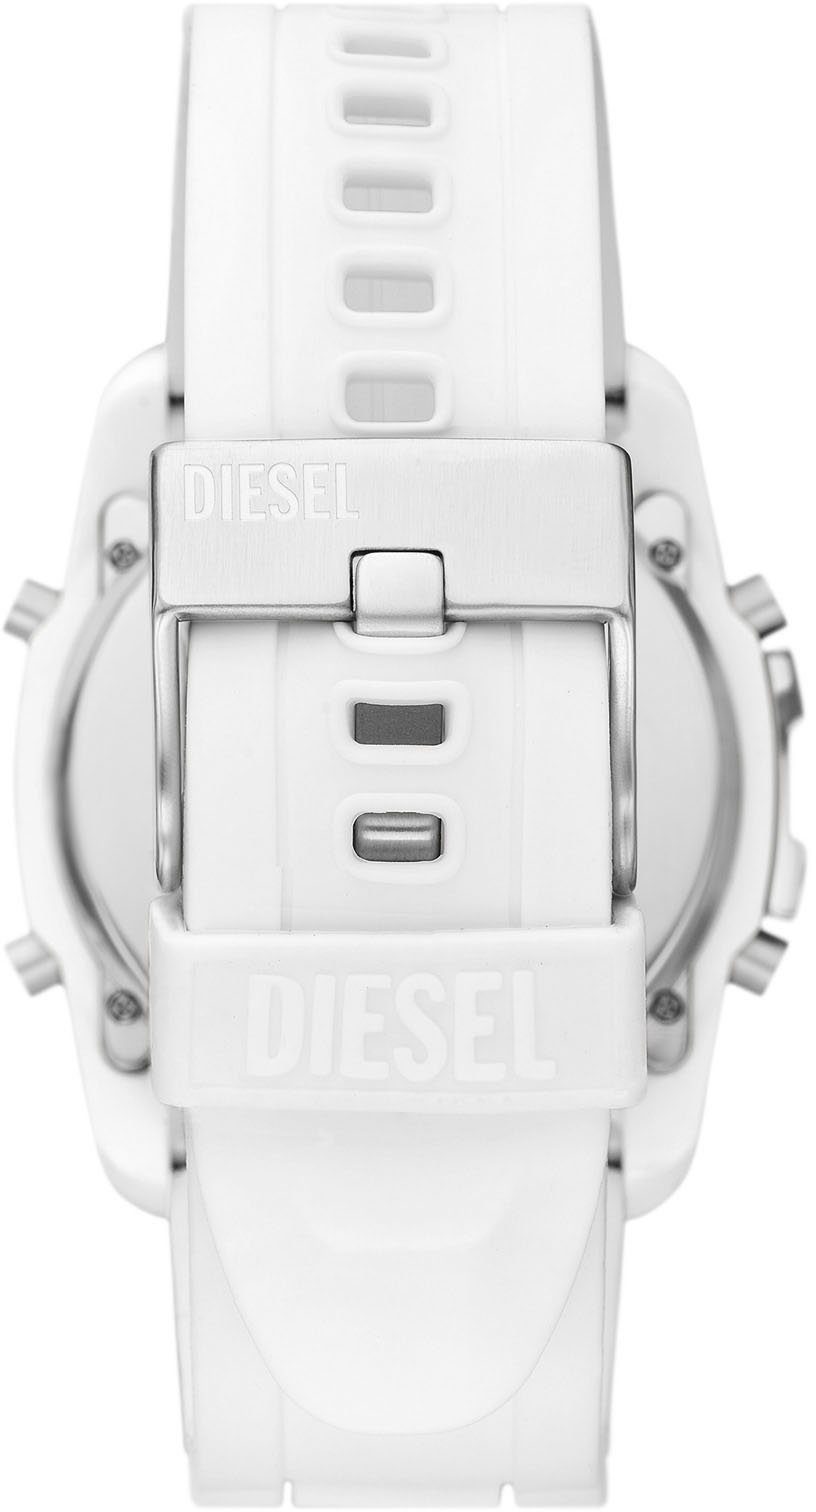 DZ2157 CHIEF, Diesel MASTER Digitaluhr